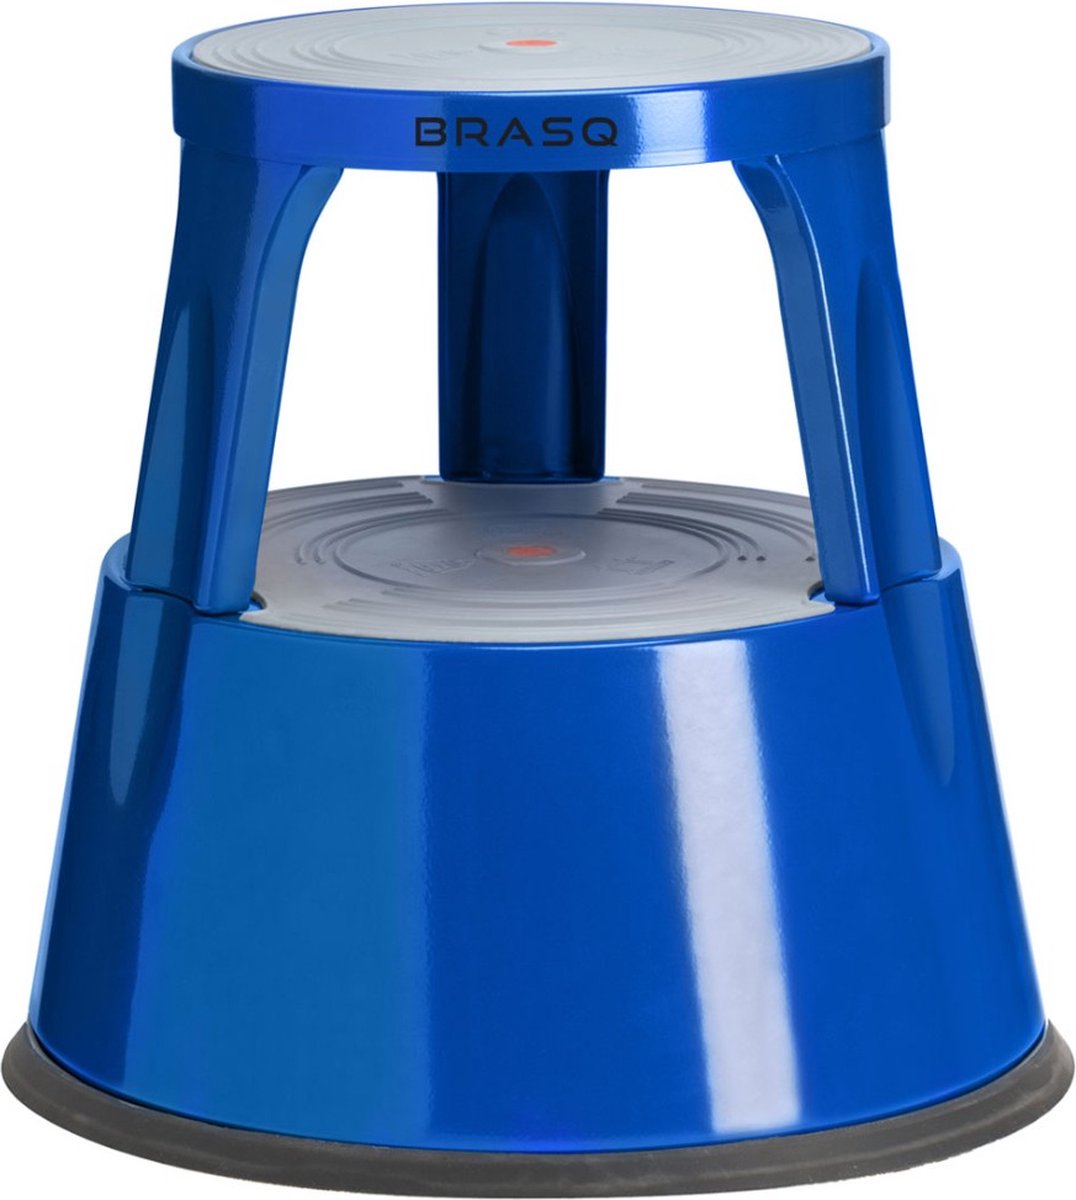 BRASQ Opstapkrukje Verrijdbaar Premium Blauw metaal ST300 draagvermogen 150 kg, opstapkruk, olifantenvoet, kantoorkruk, trap, roltrap, kruk